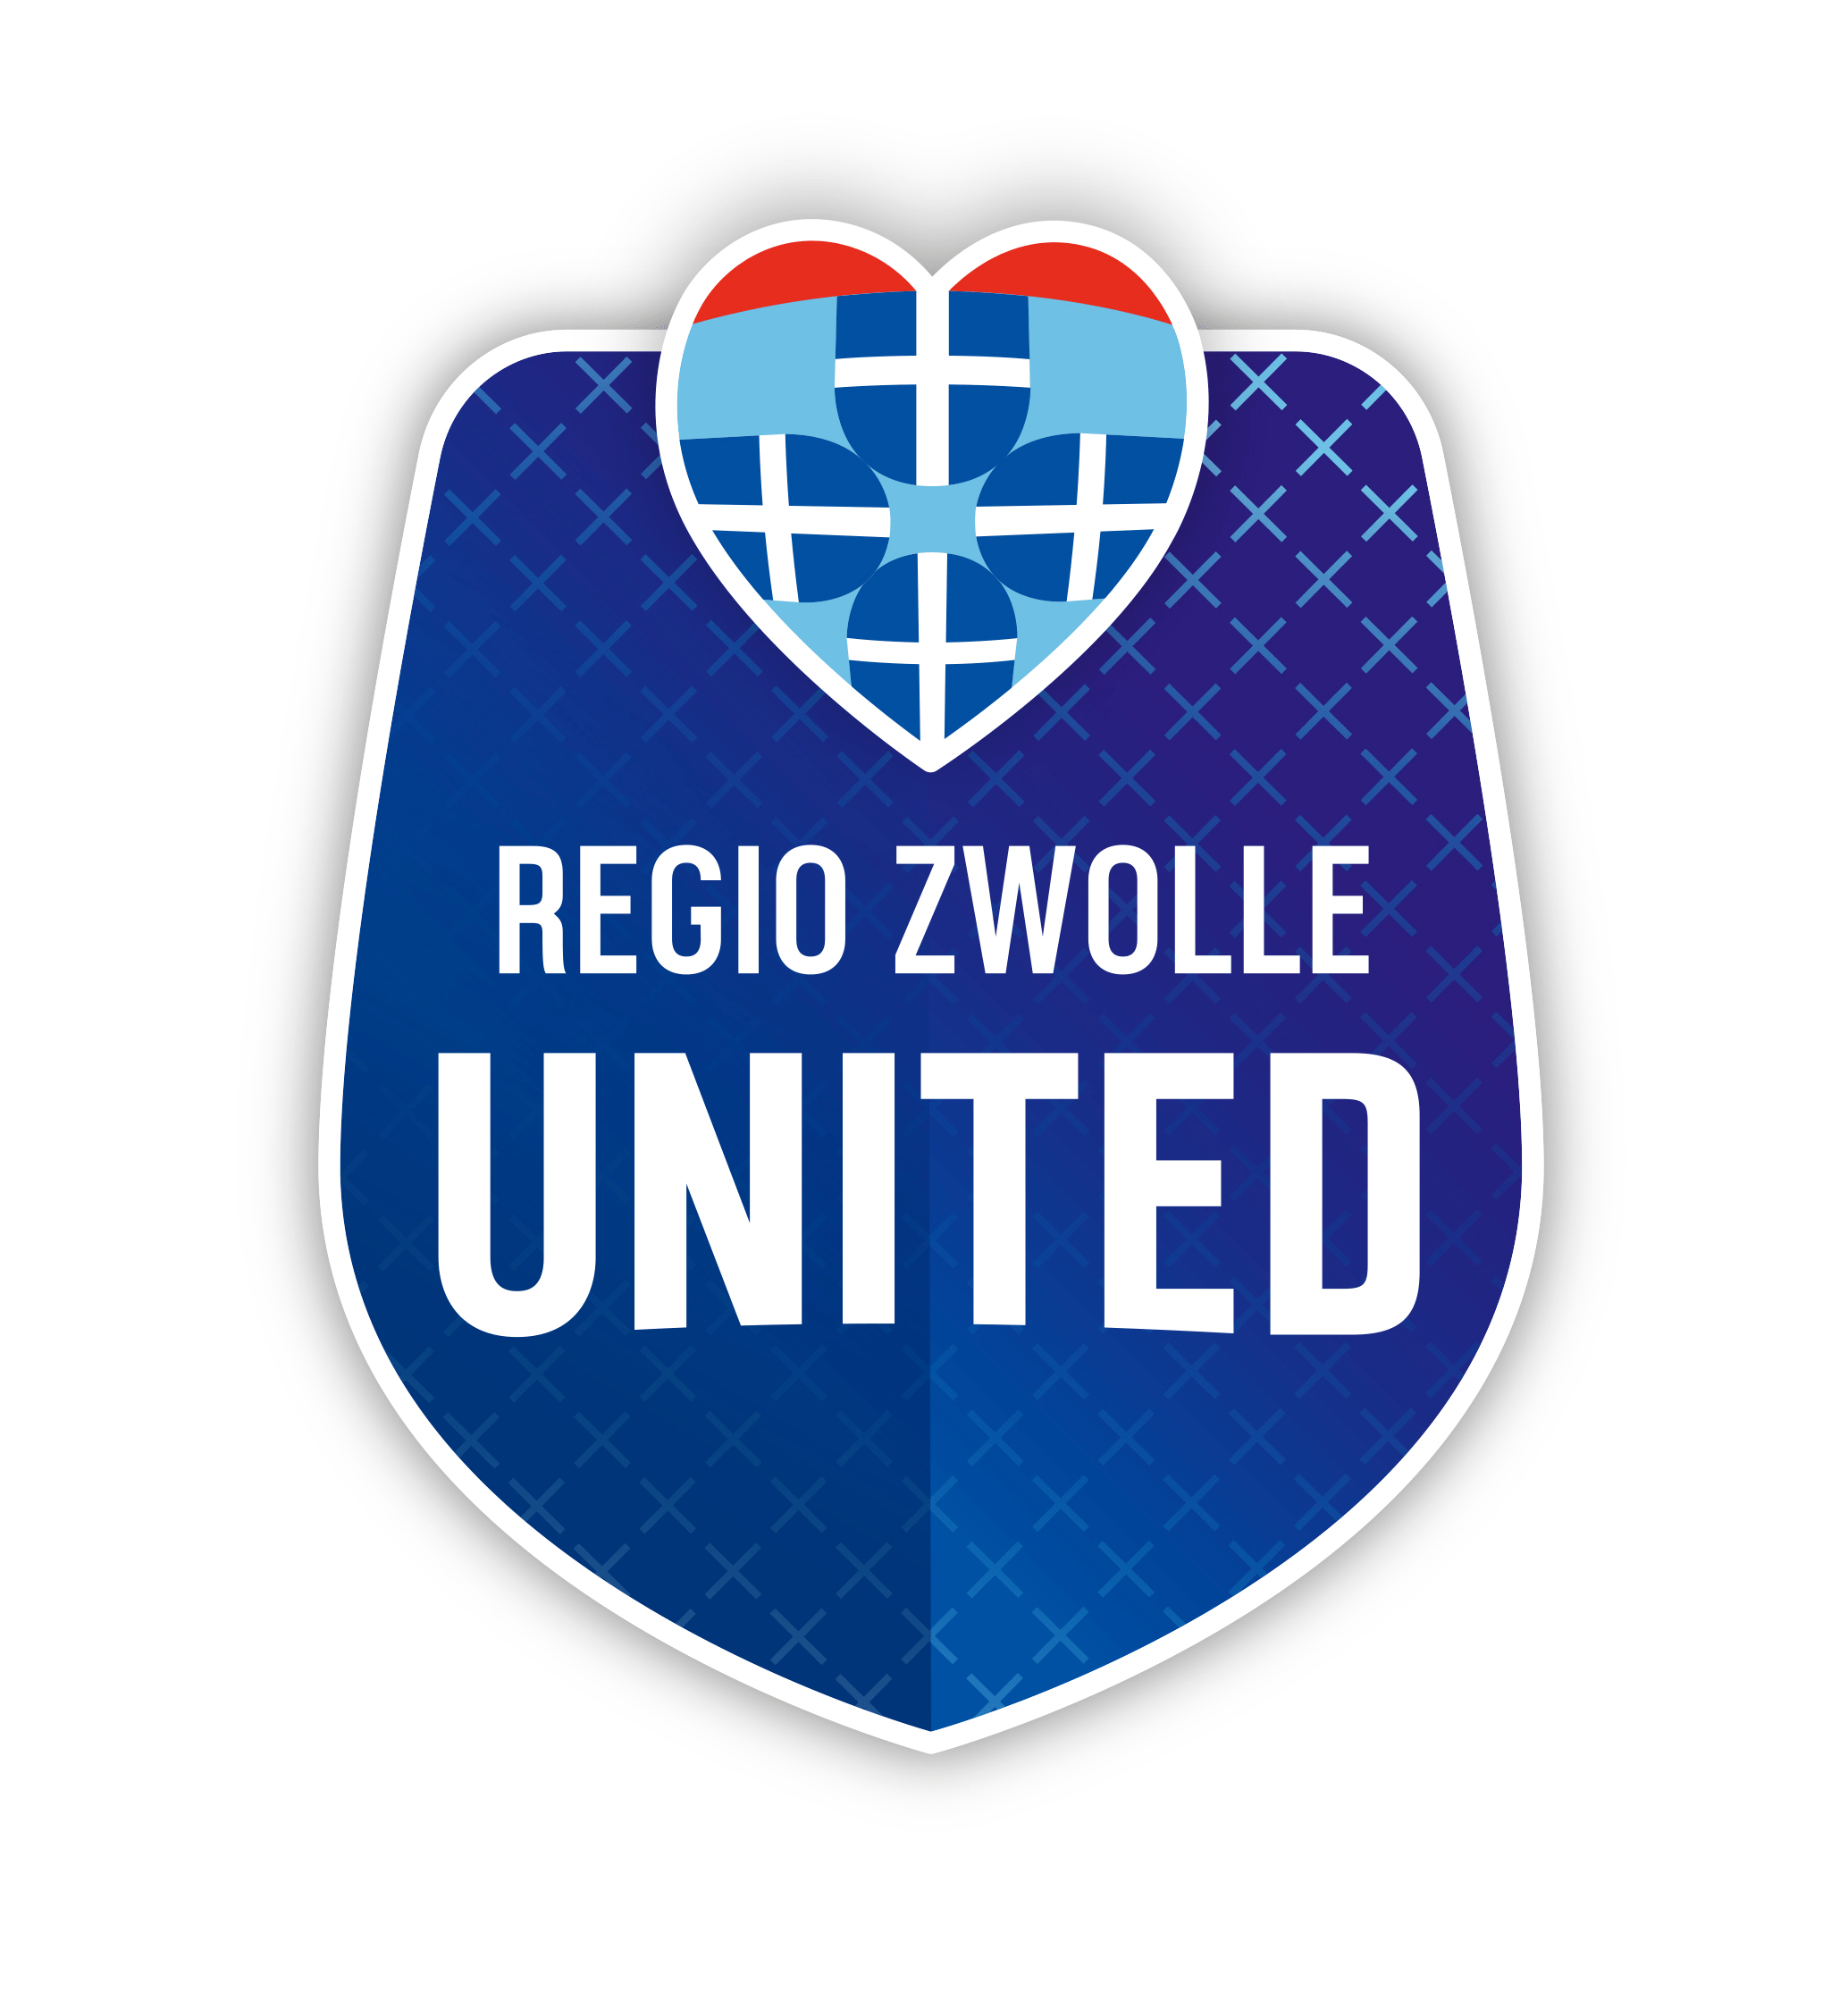 PEC Zwolle United